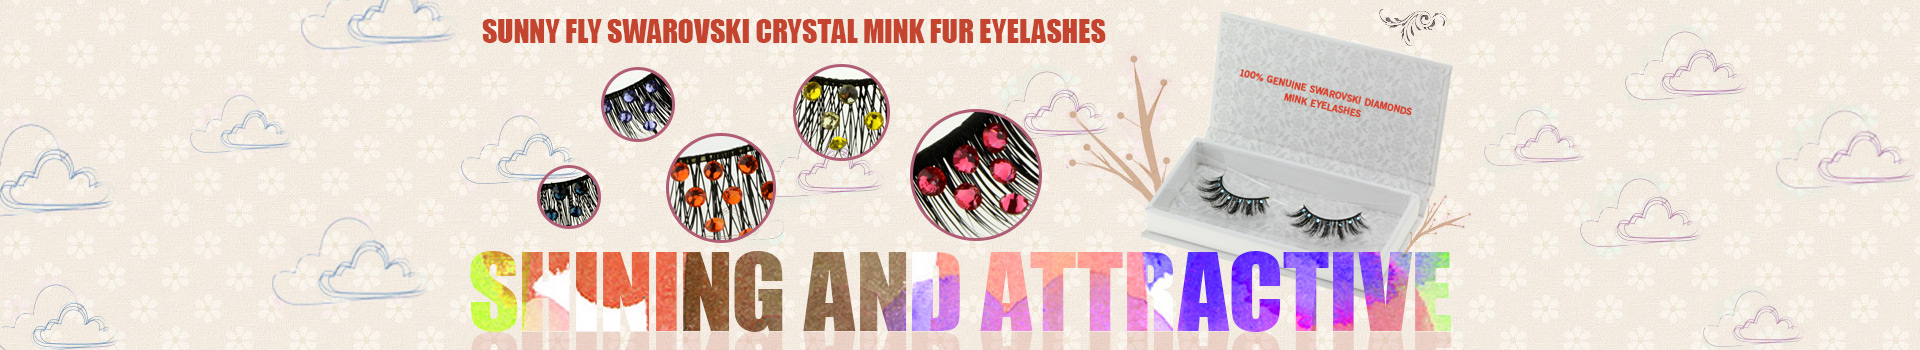 Swarovski Crystal Mink Fur Eyelashes MS07